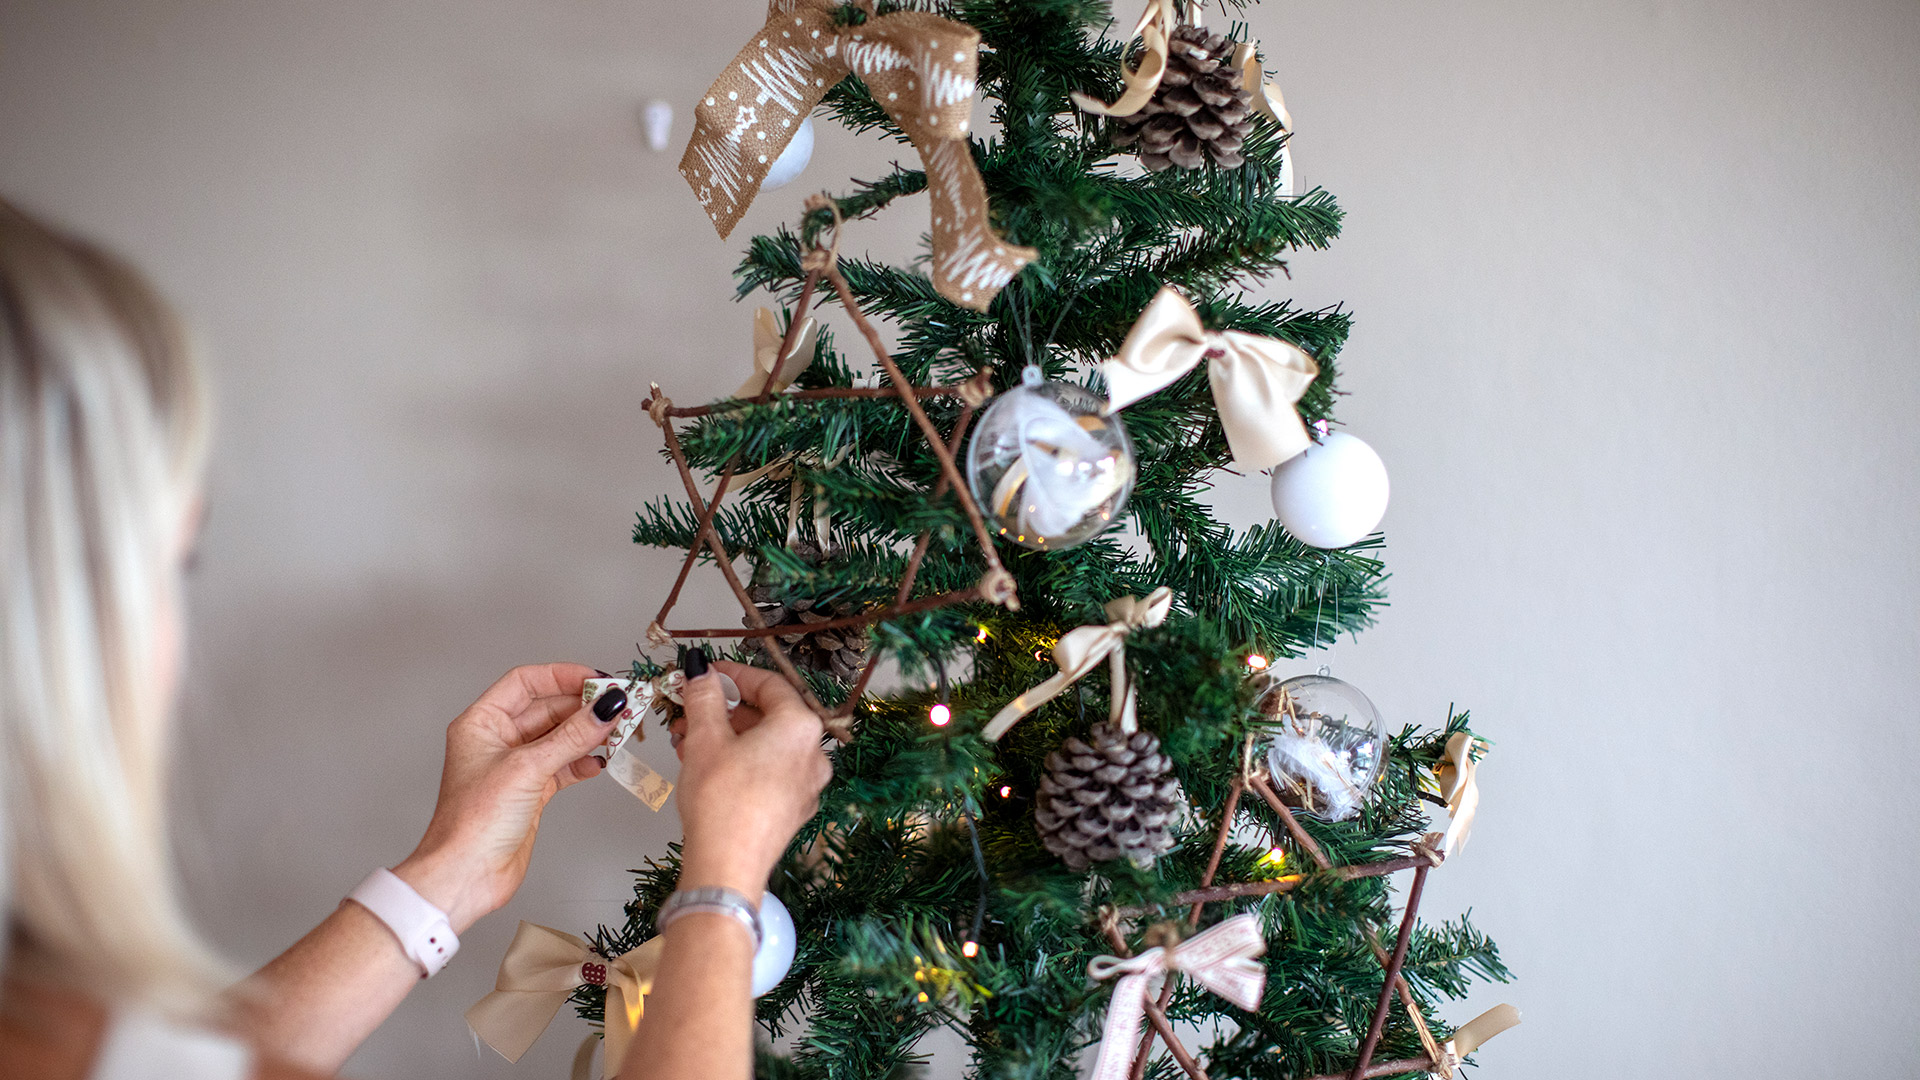 Del paganismo al cristianismo: cuáles son las curiosidades históricas del árbol de Navidad